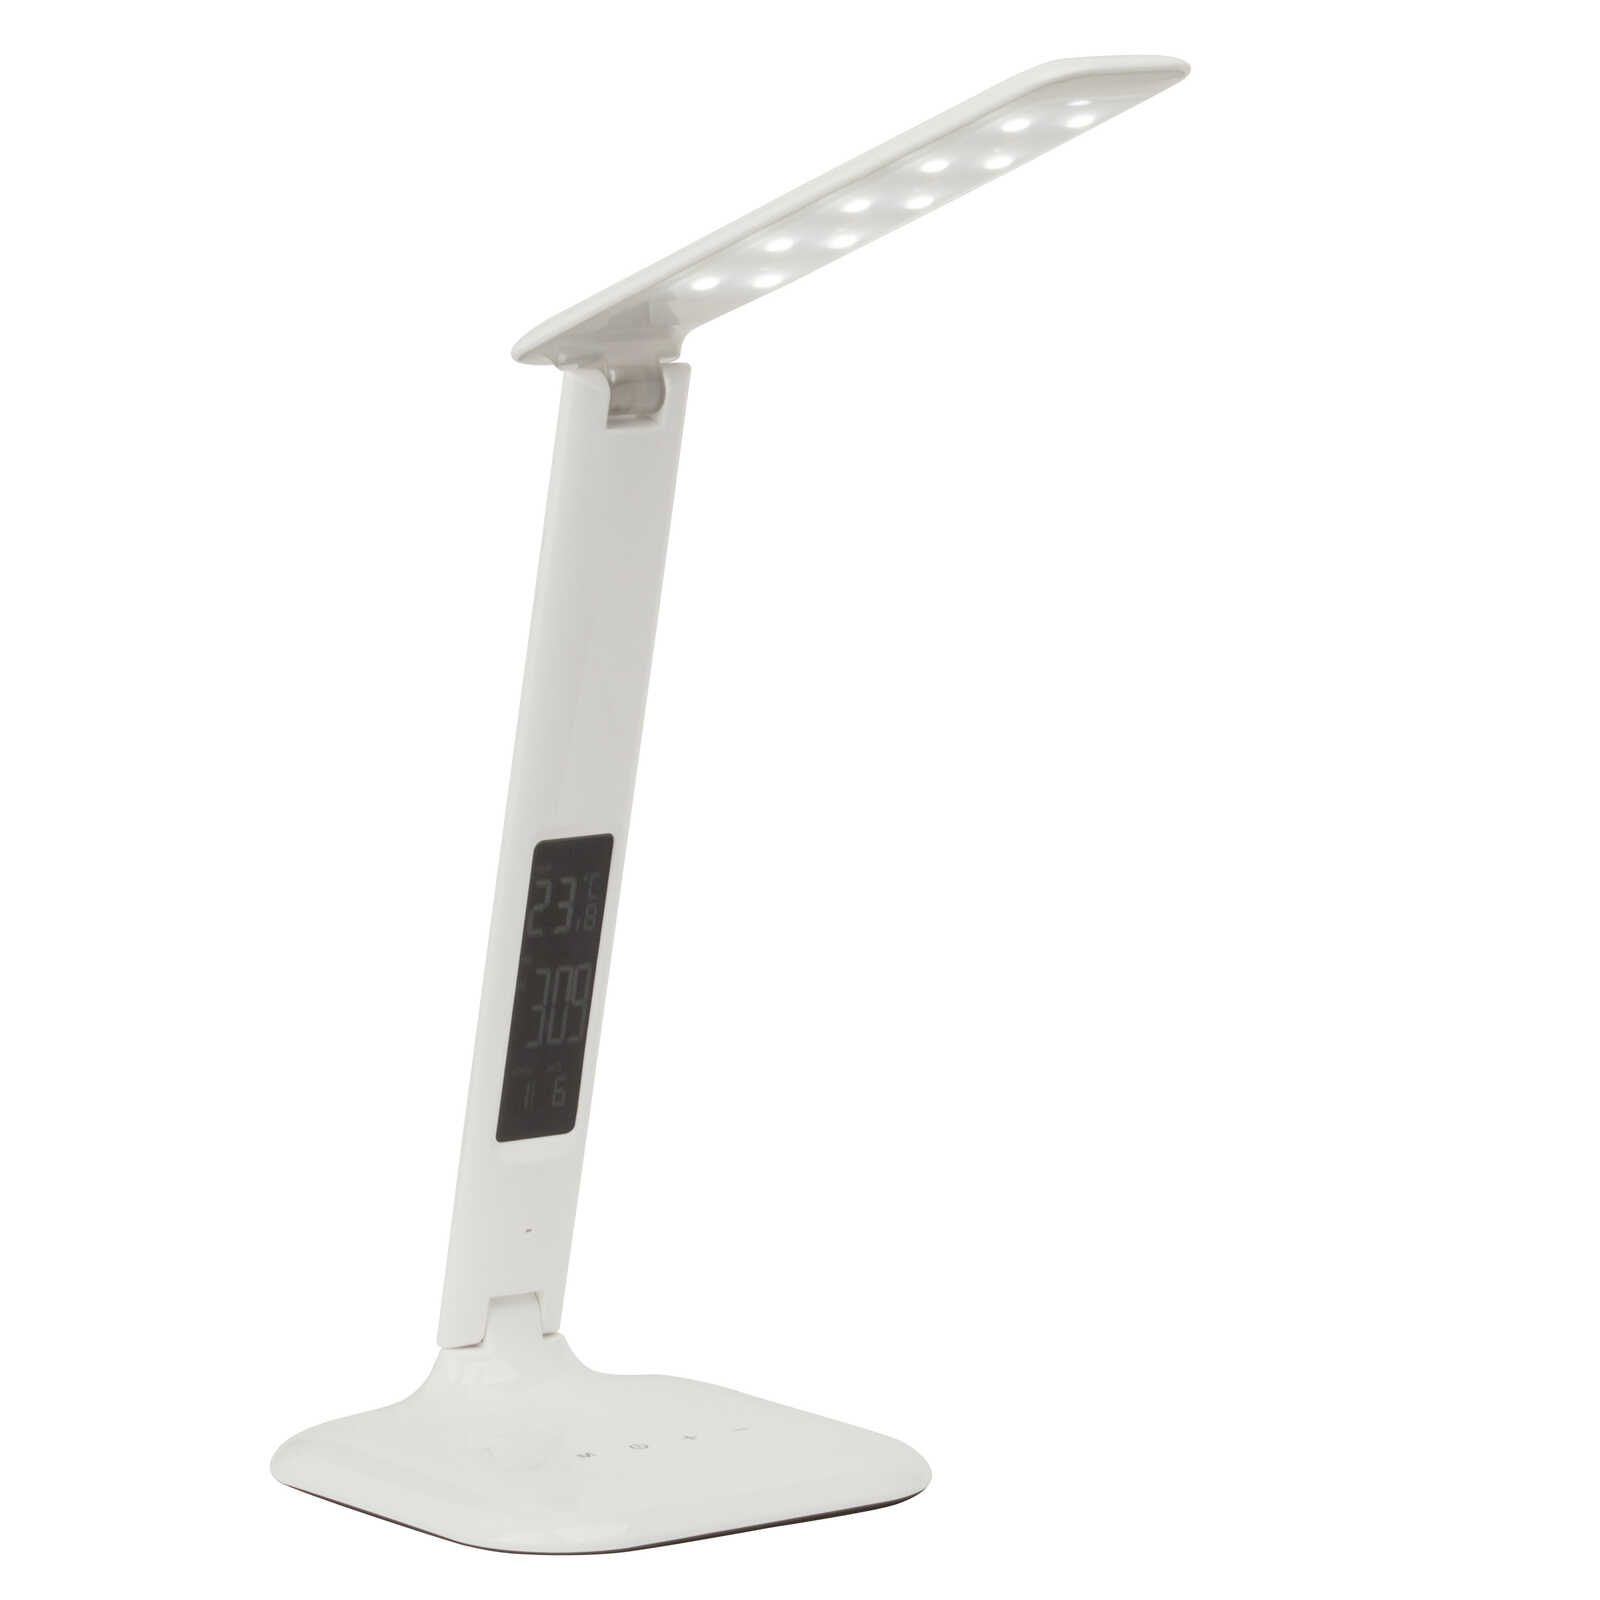             Plastic table lamp - Hugo 1 - White
        